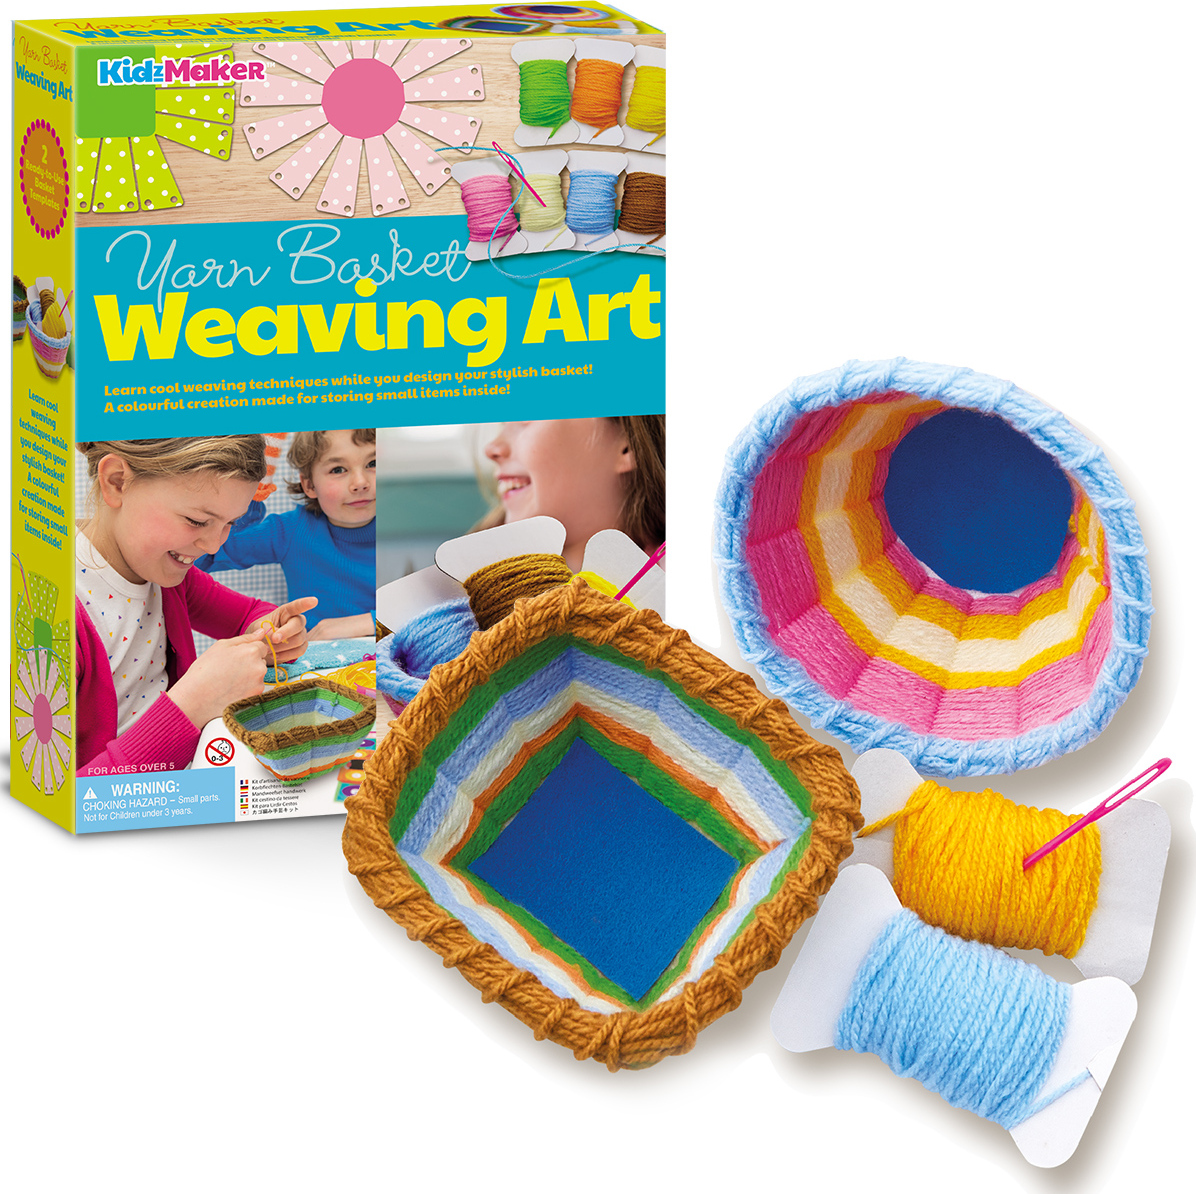 Yarn Basket Weaving Art - Mr. Mopps' Toy Shop